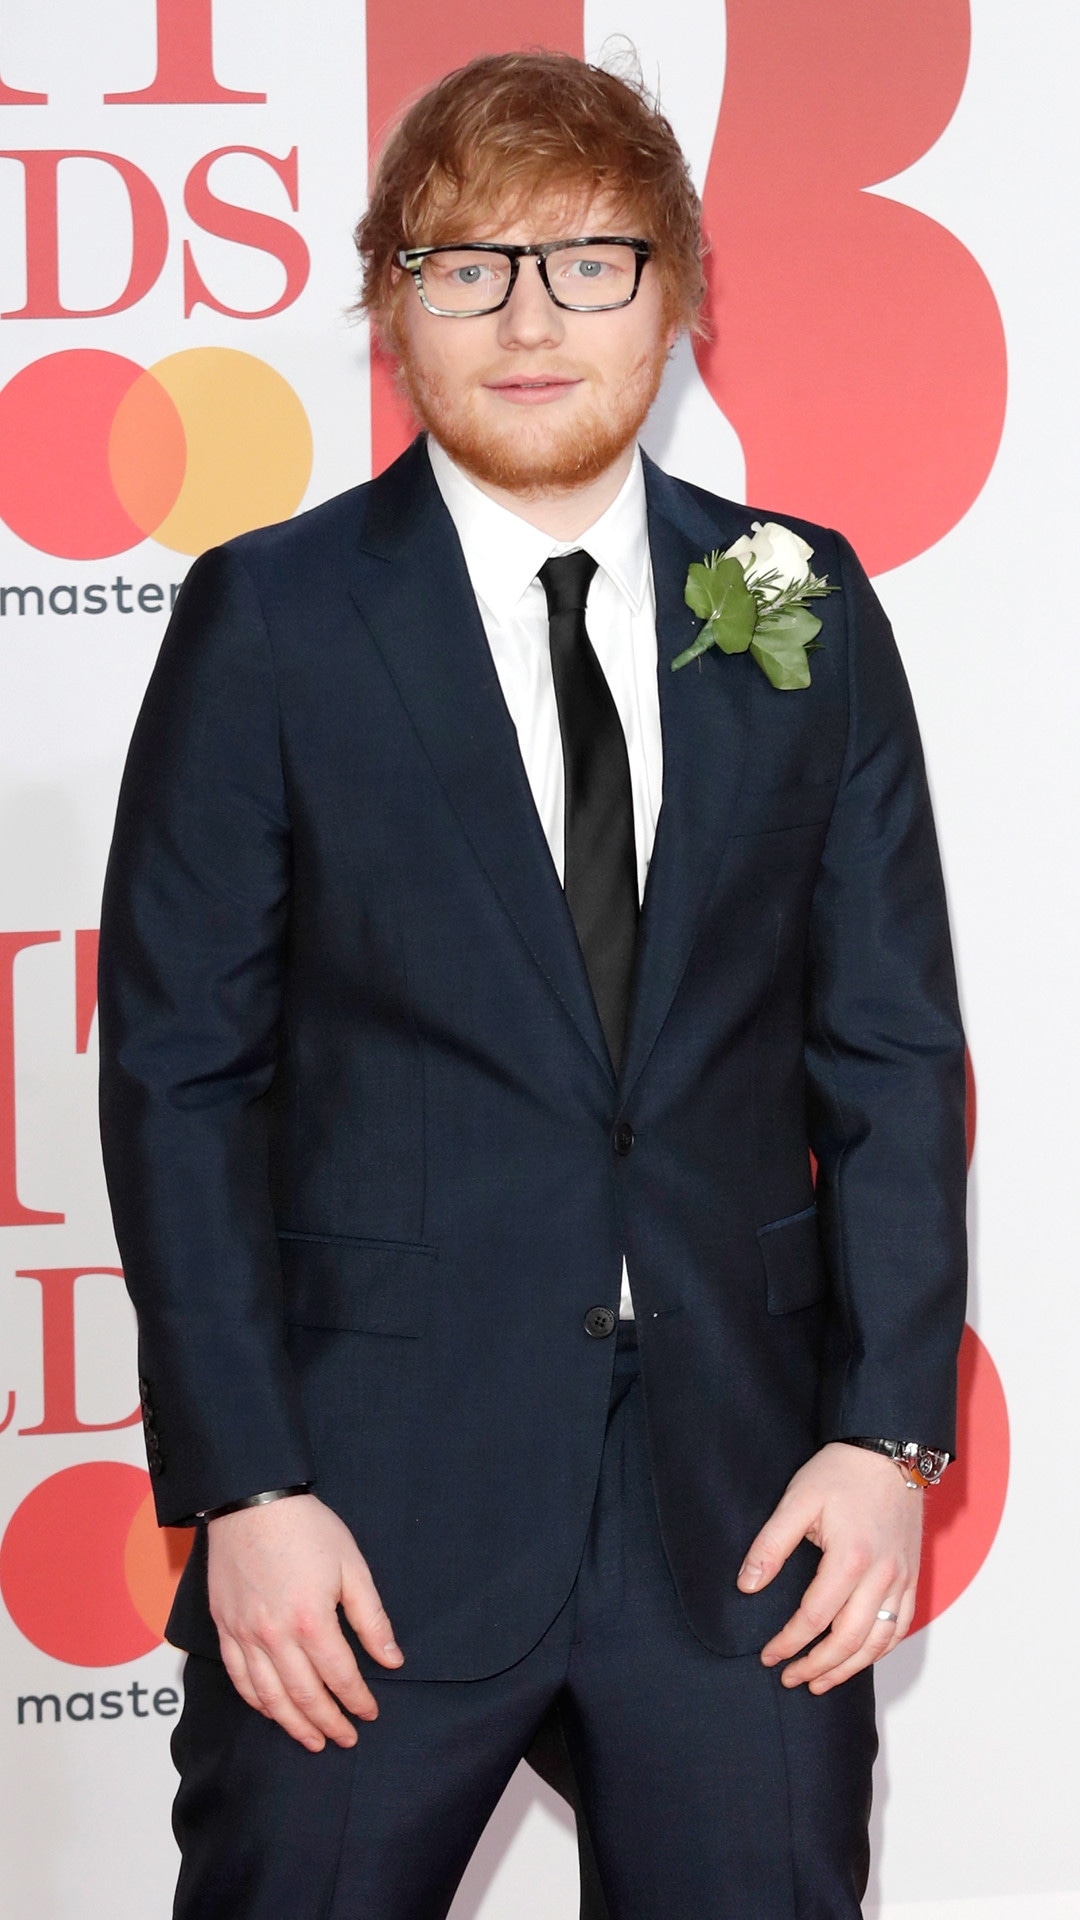 Ed Sheeran, 2018 Brit Awards